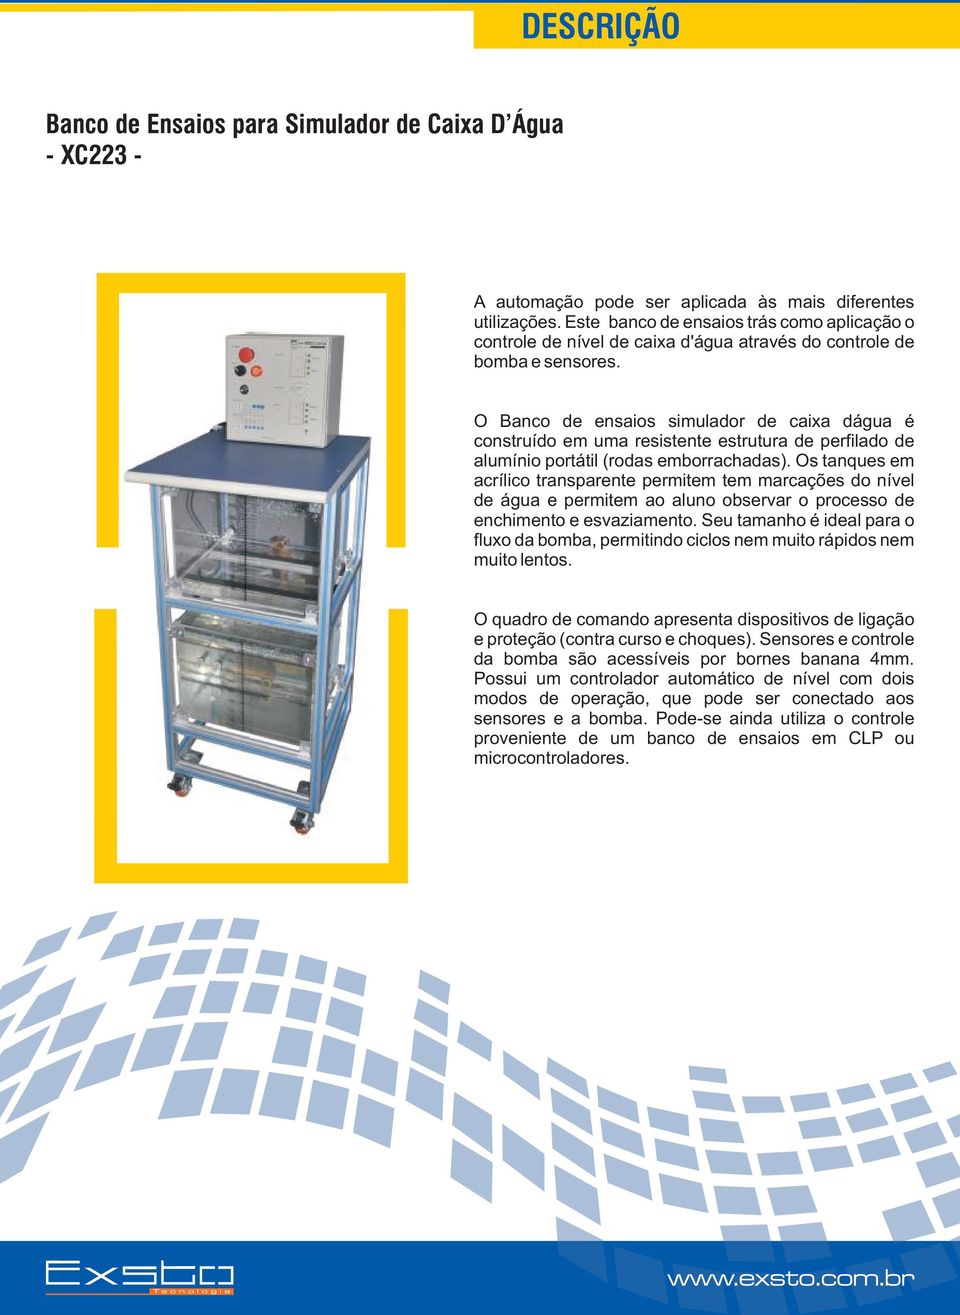 O Banco de ensaios simulador de caixa dágua é construído em uma resistente estrutura de perfilado de alumínio portátil (rodas emborrachadas).